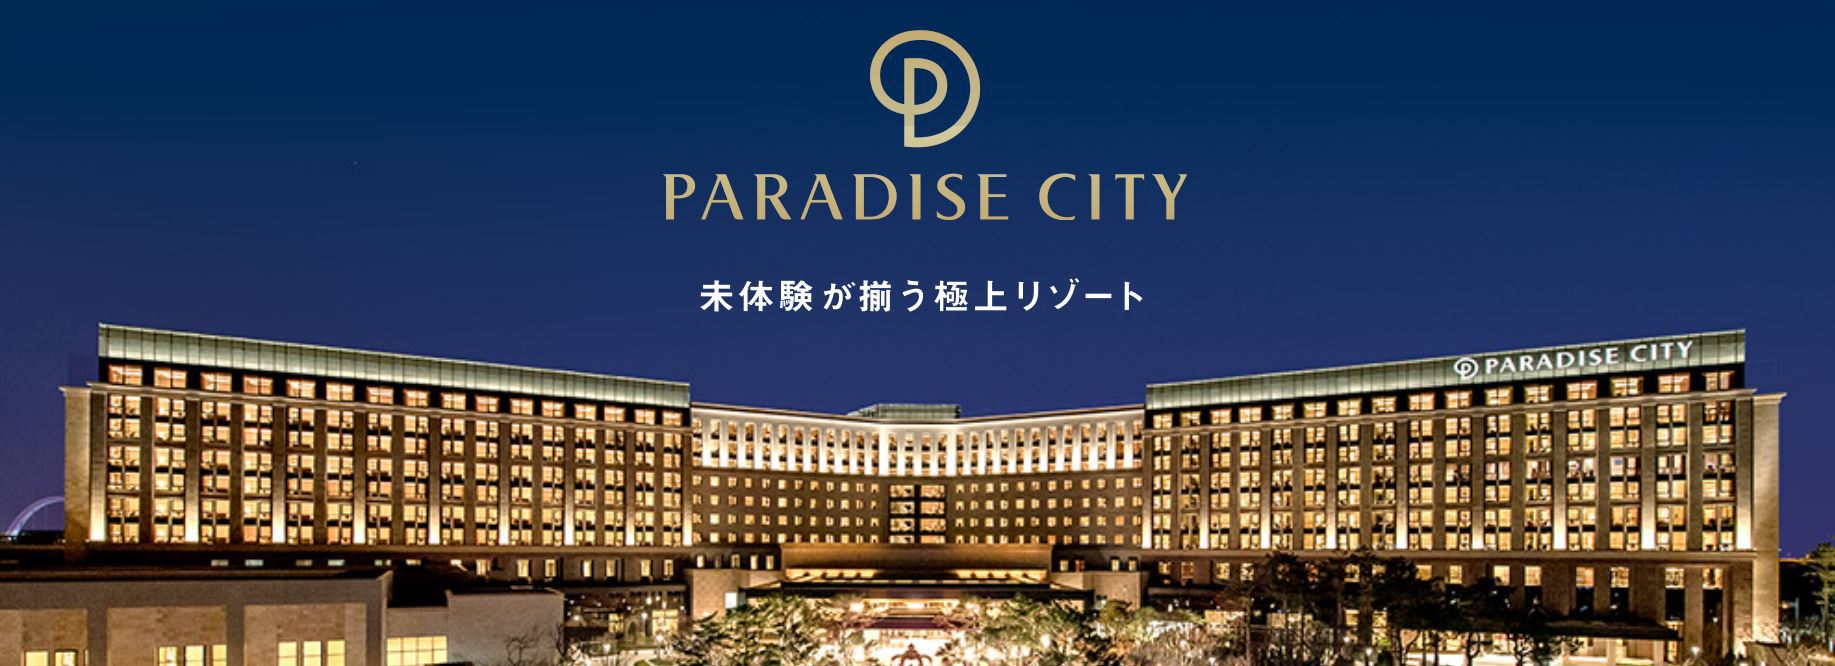 パラダイスホテル リゾート パラダイスシティ Paradise Hotel Resort Paradise City 宿泊予約 楽天トラベル